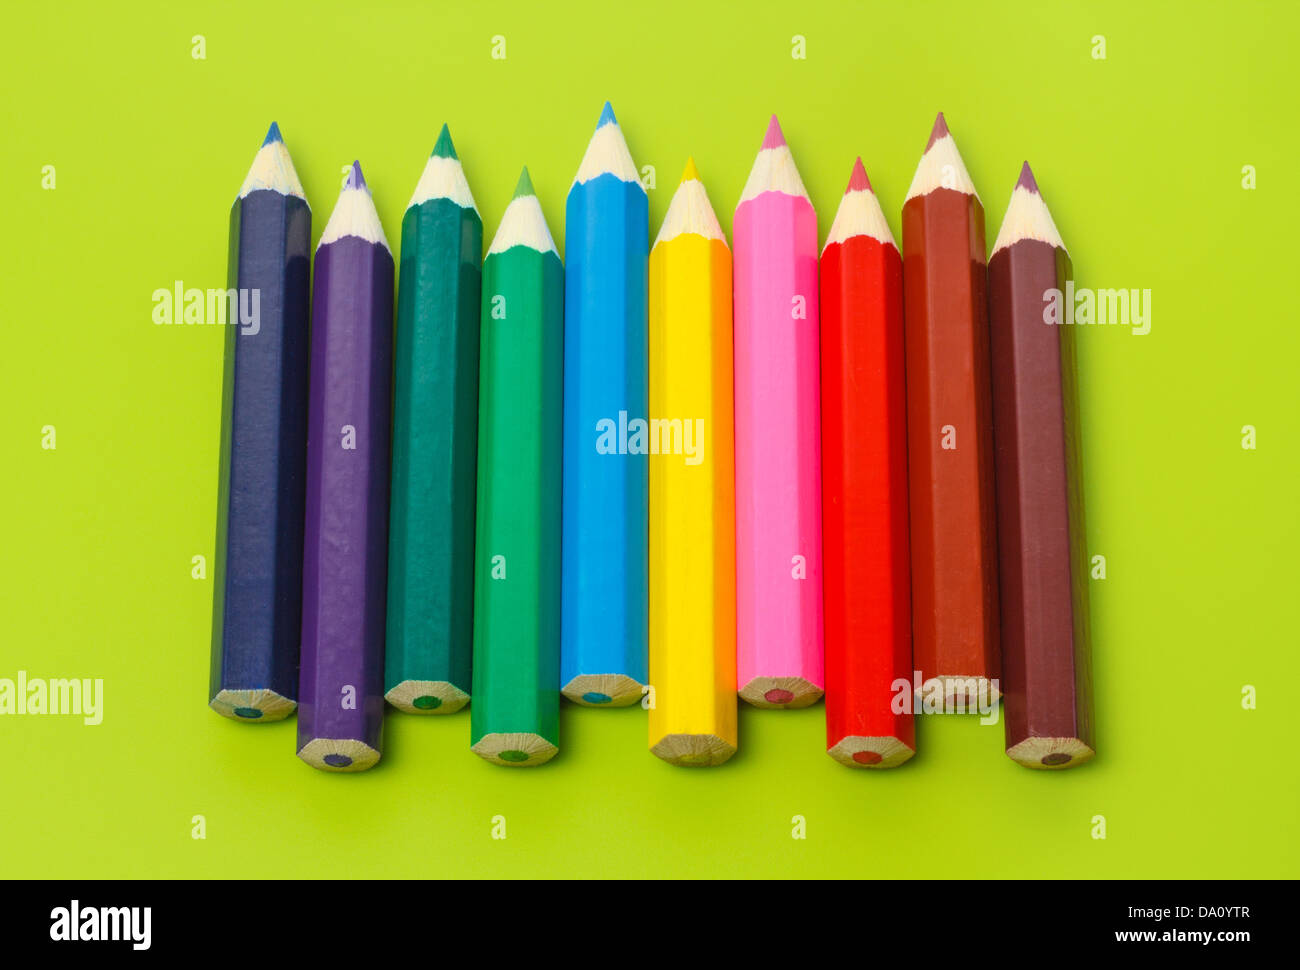 Piccole matite colorate in una fila in arcobaleno di colori contro il fondo color verde oliva Foto Stock